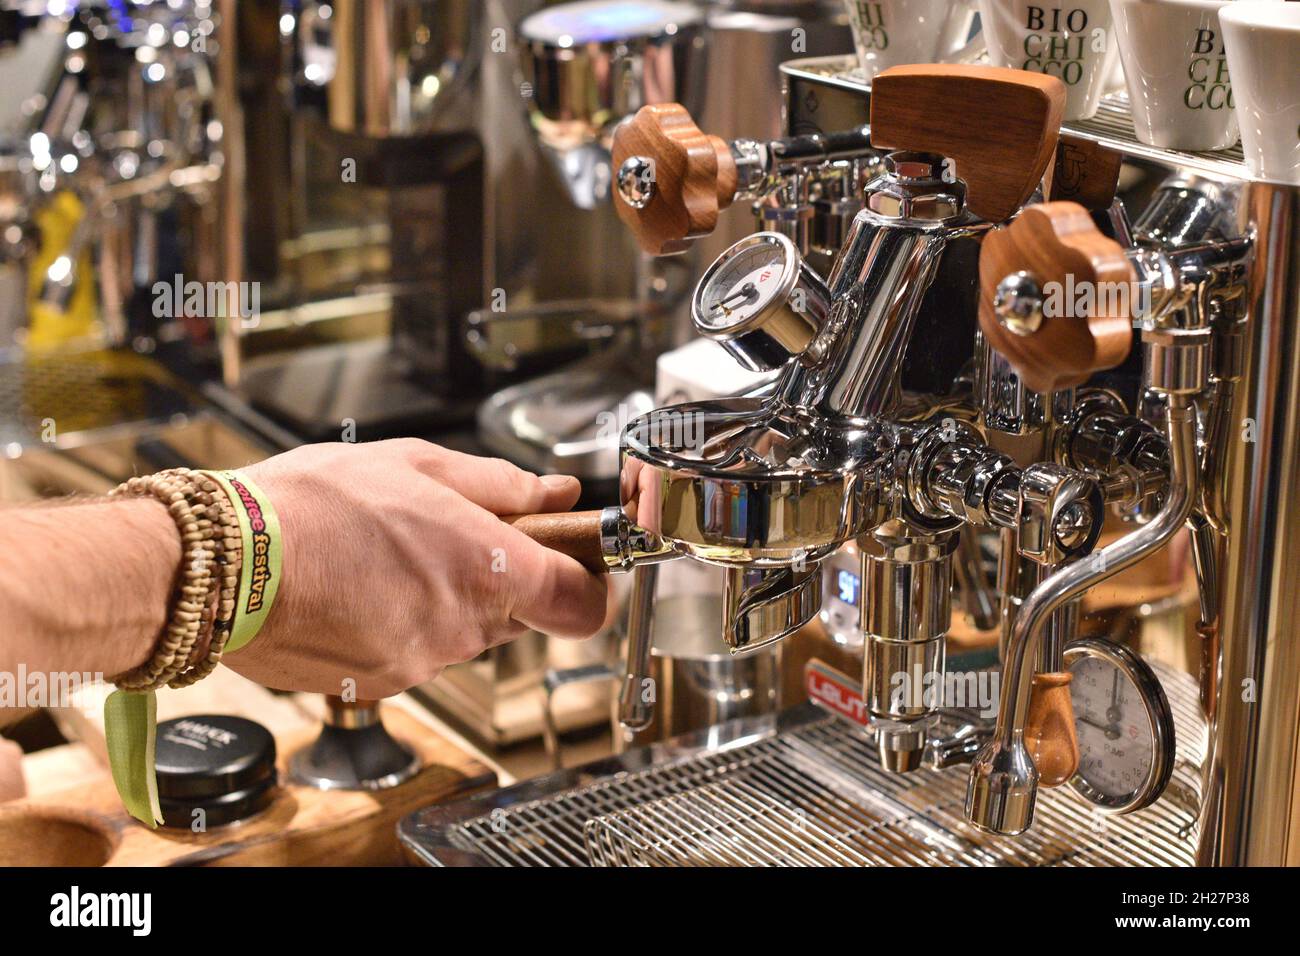 Kein anderes Land Europas zeichnet sich durch solch eine traditionsreiche Kaffeekultur aus wie Österreich. Dessen Hauptstadt Wien ist nämlich nicht nu Stock Photo